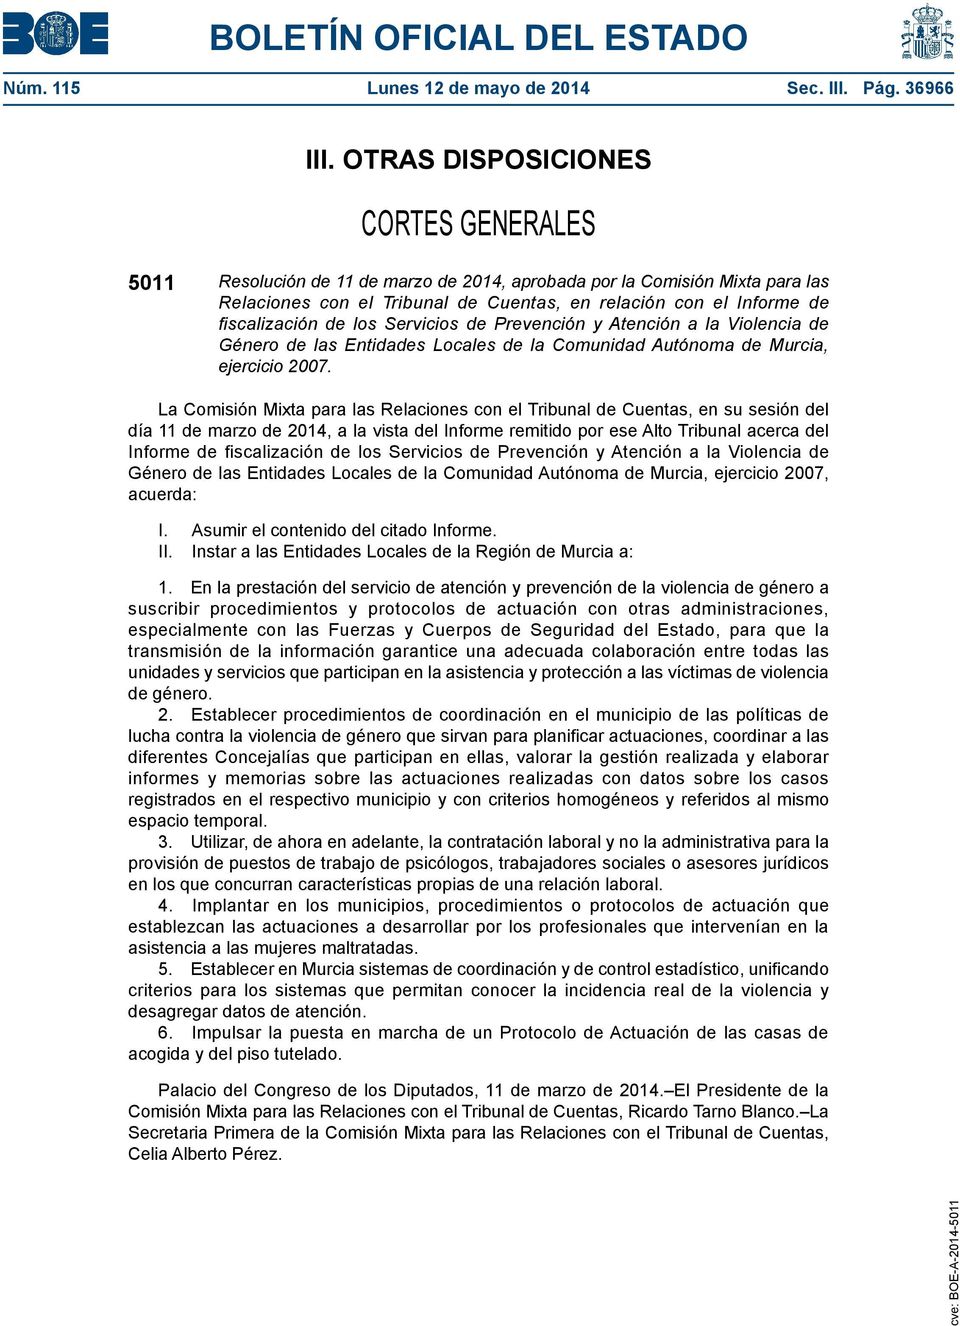 Servicios de Prevención y Atención a la Violencia de Género de las Entidades Locales de la Comunidad Autónoma de Murcia, ejercicio 2007.